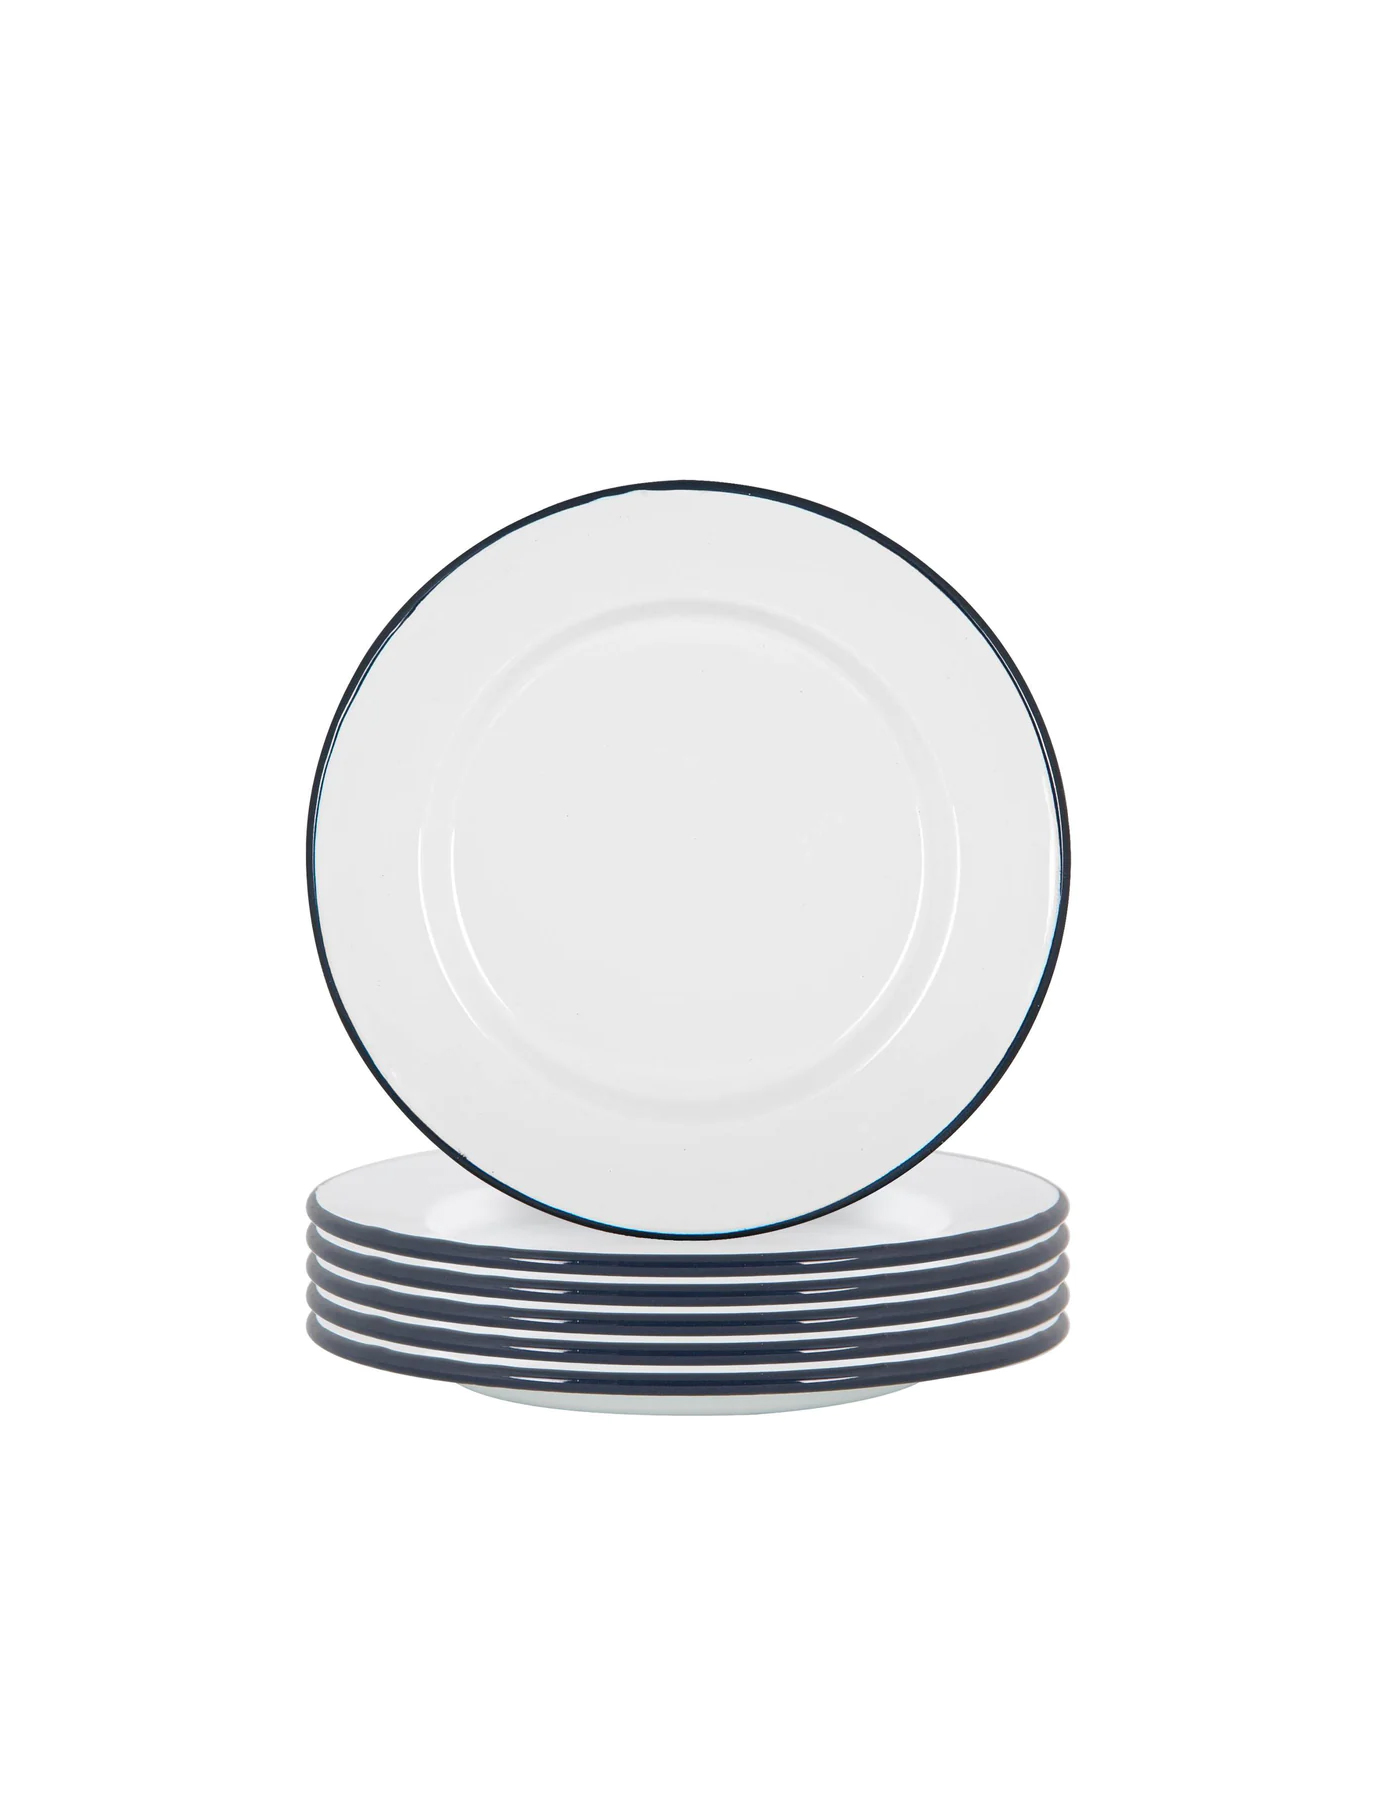 Set of 6 Navy Rimmed Enamel Dinner Plates, 25cm